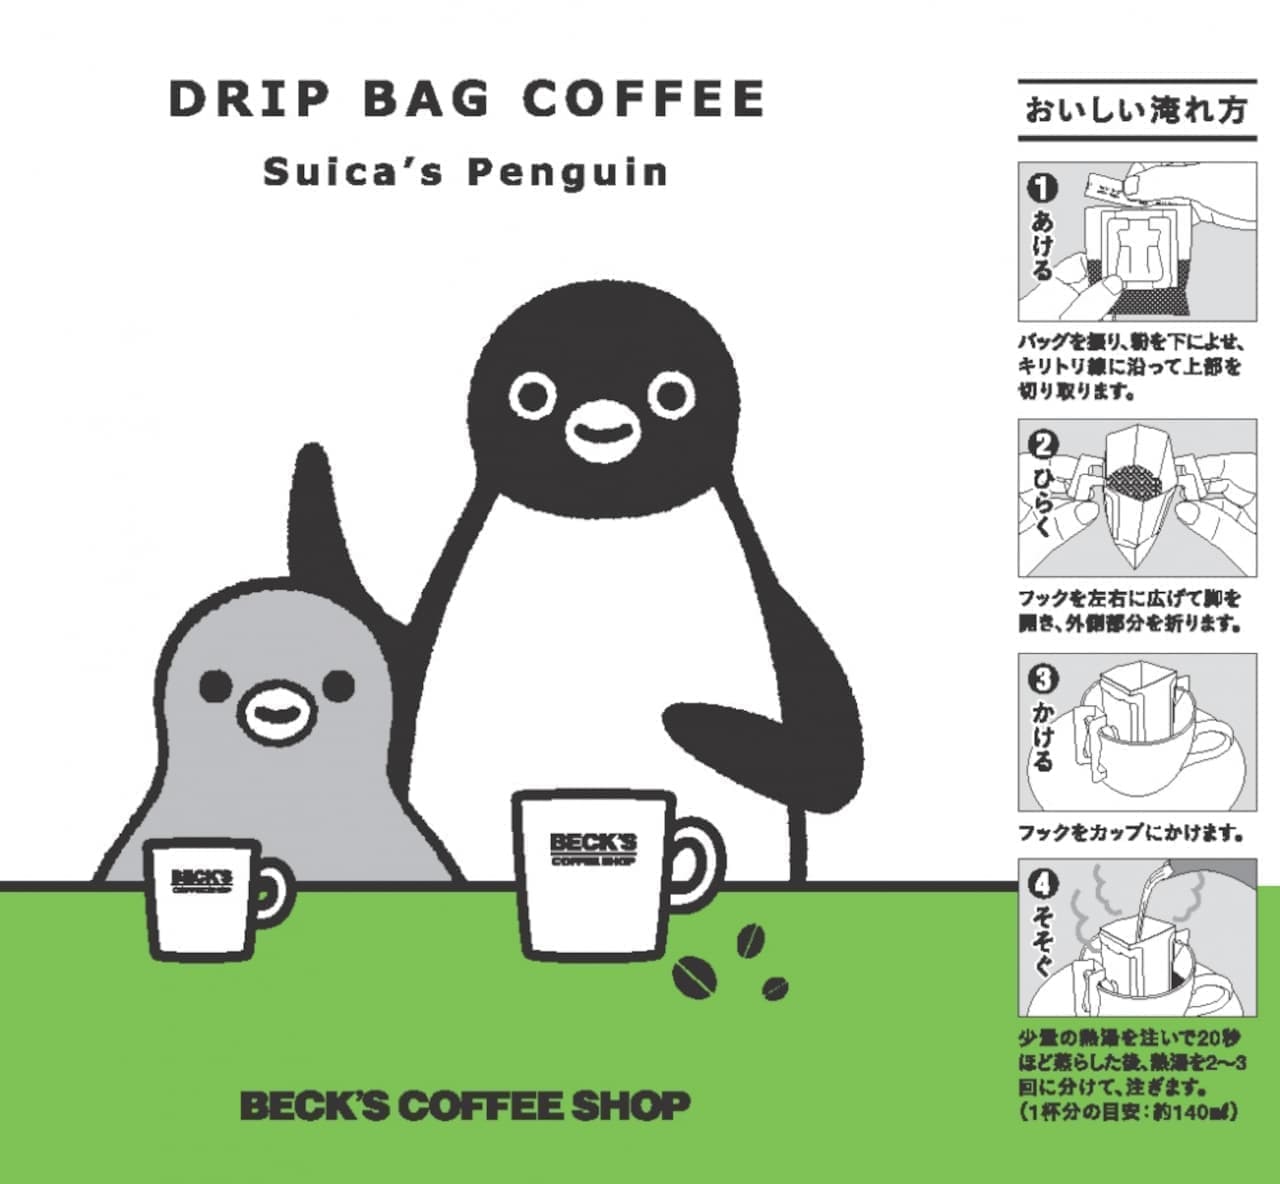 Bex "Suica's Penguin Drip Bag Coffee"